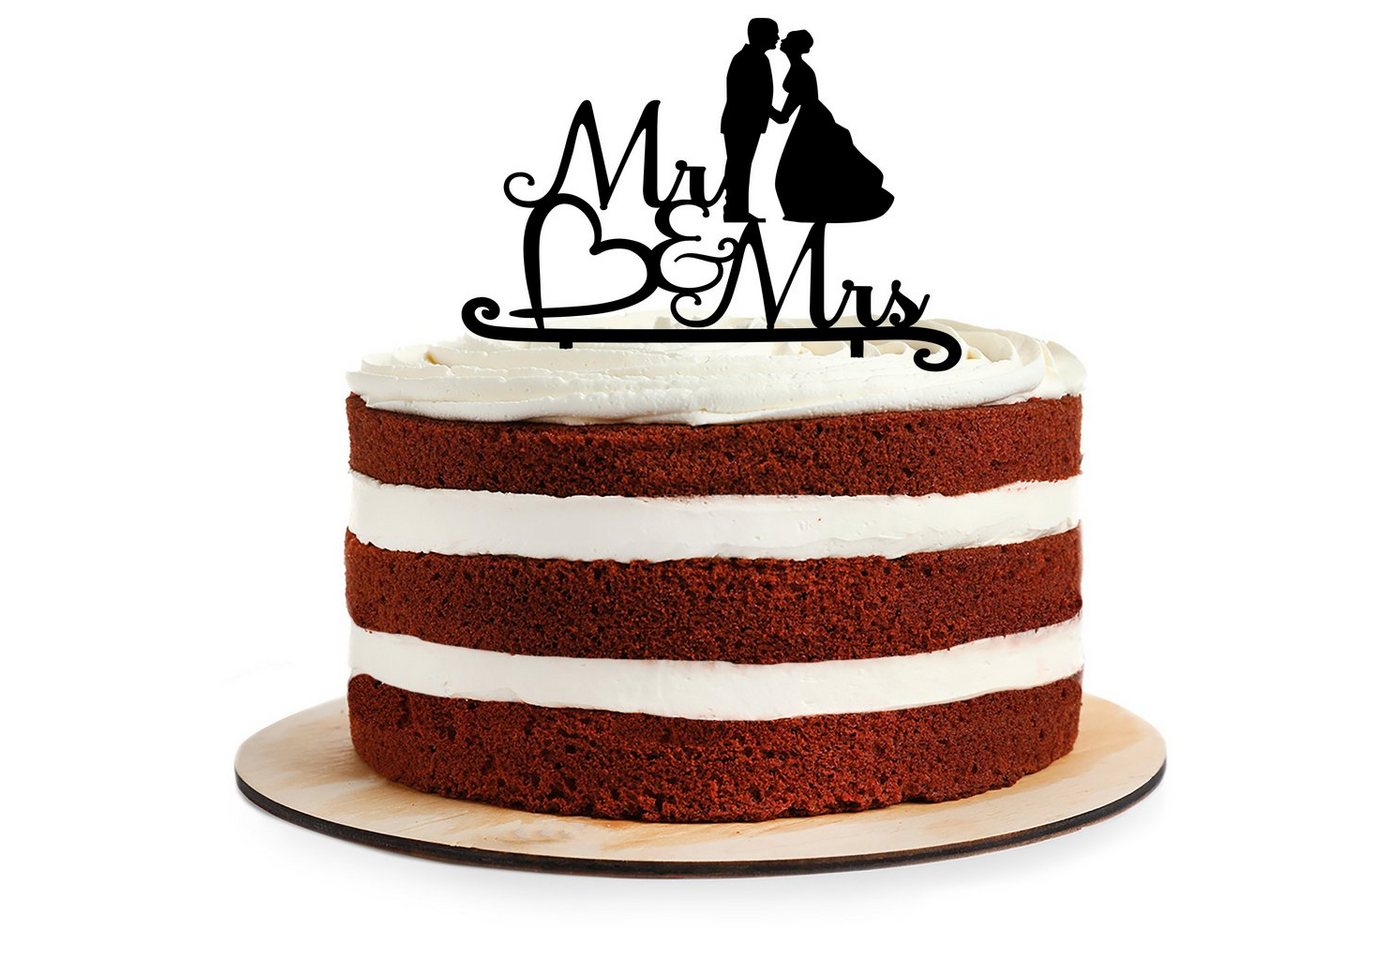 AREA17 Tortenstecker Cake Topper aus Acryl zur Hochzeit, Mr & Mrs, (Kuchendeko Tortenstecker, verschiedene Farben, Kuchendekoration und Tortenschmuck), 100% Made in Germany von AREA17